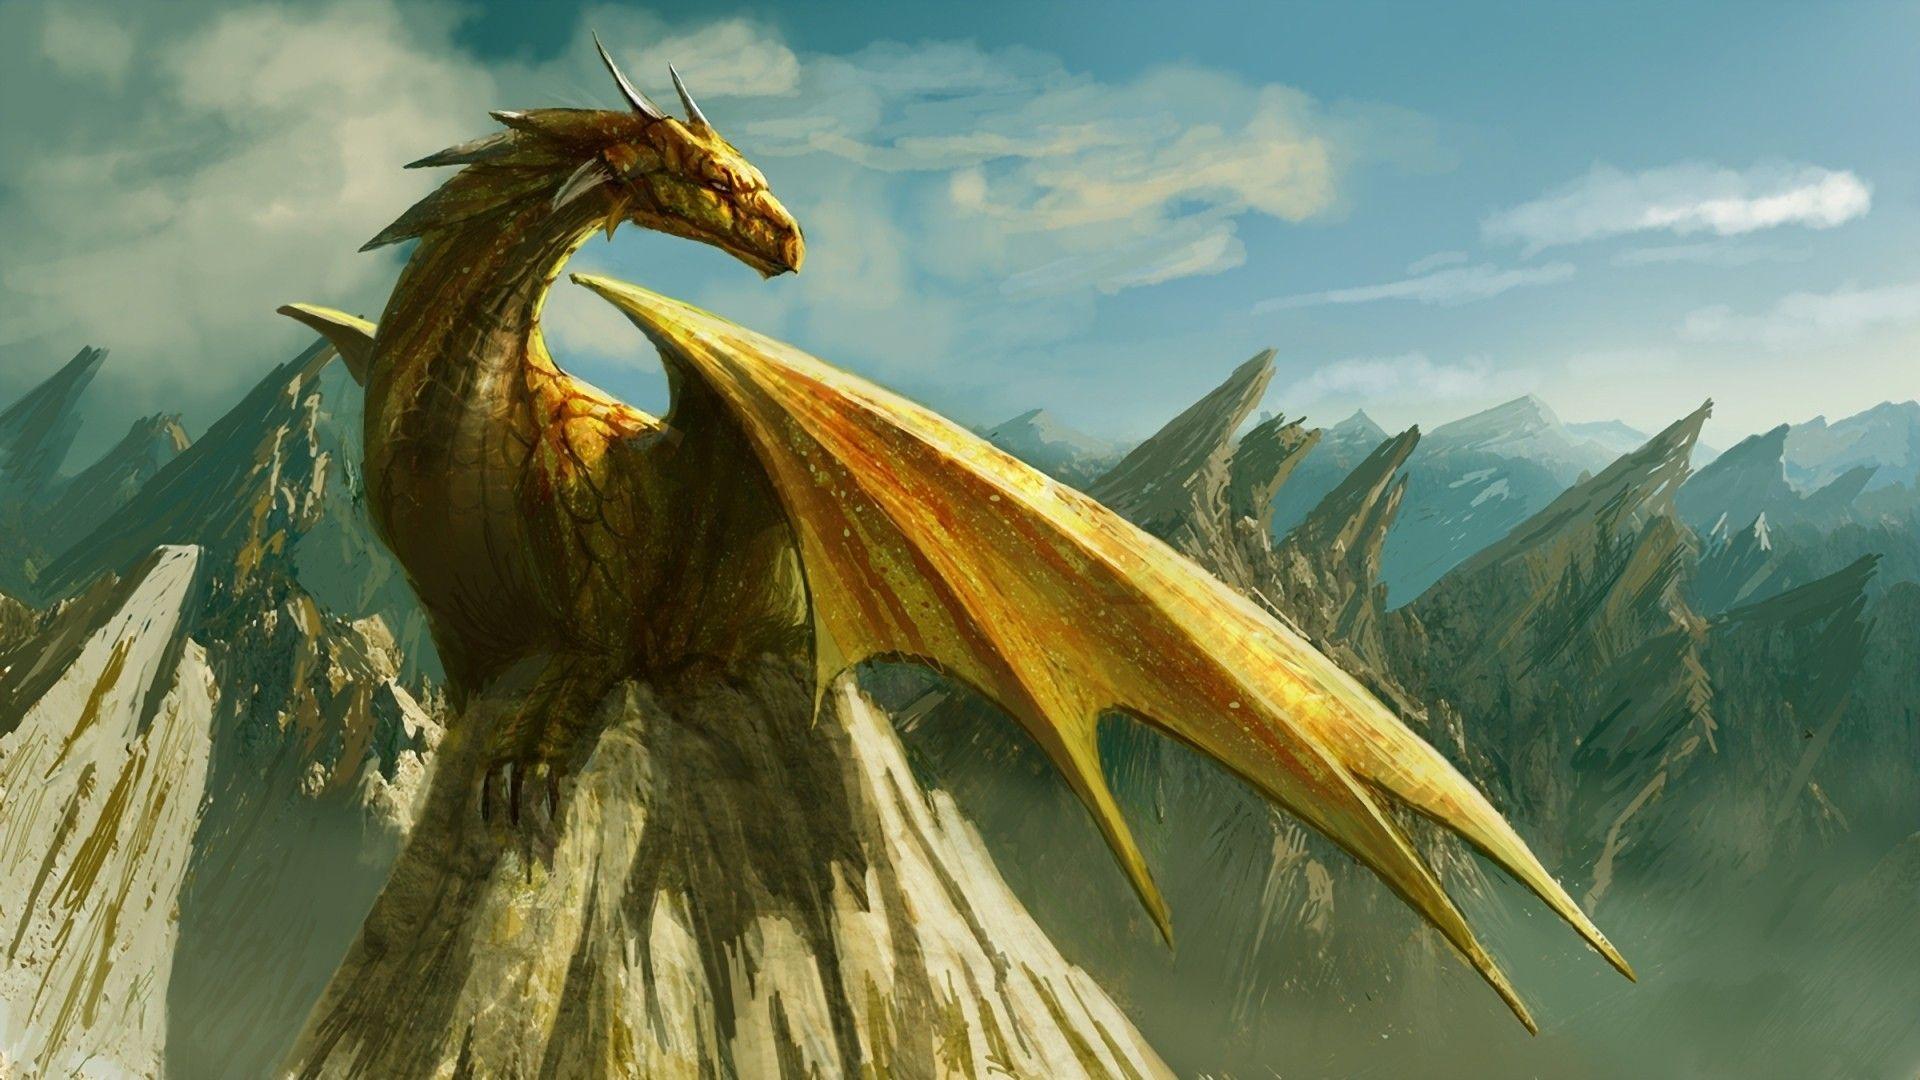 Wallpaper For > Fantasy Dragon Wallpaper